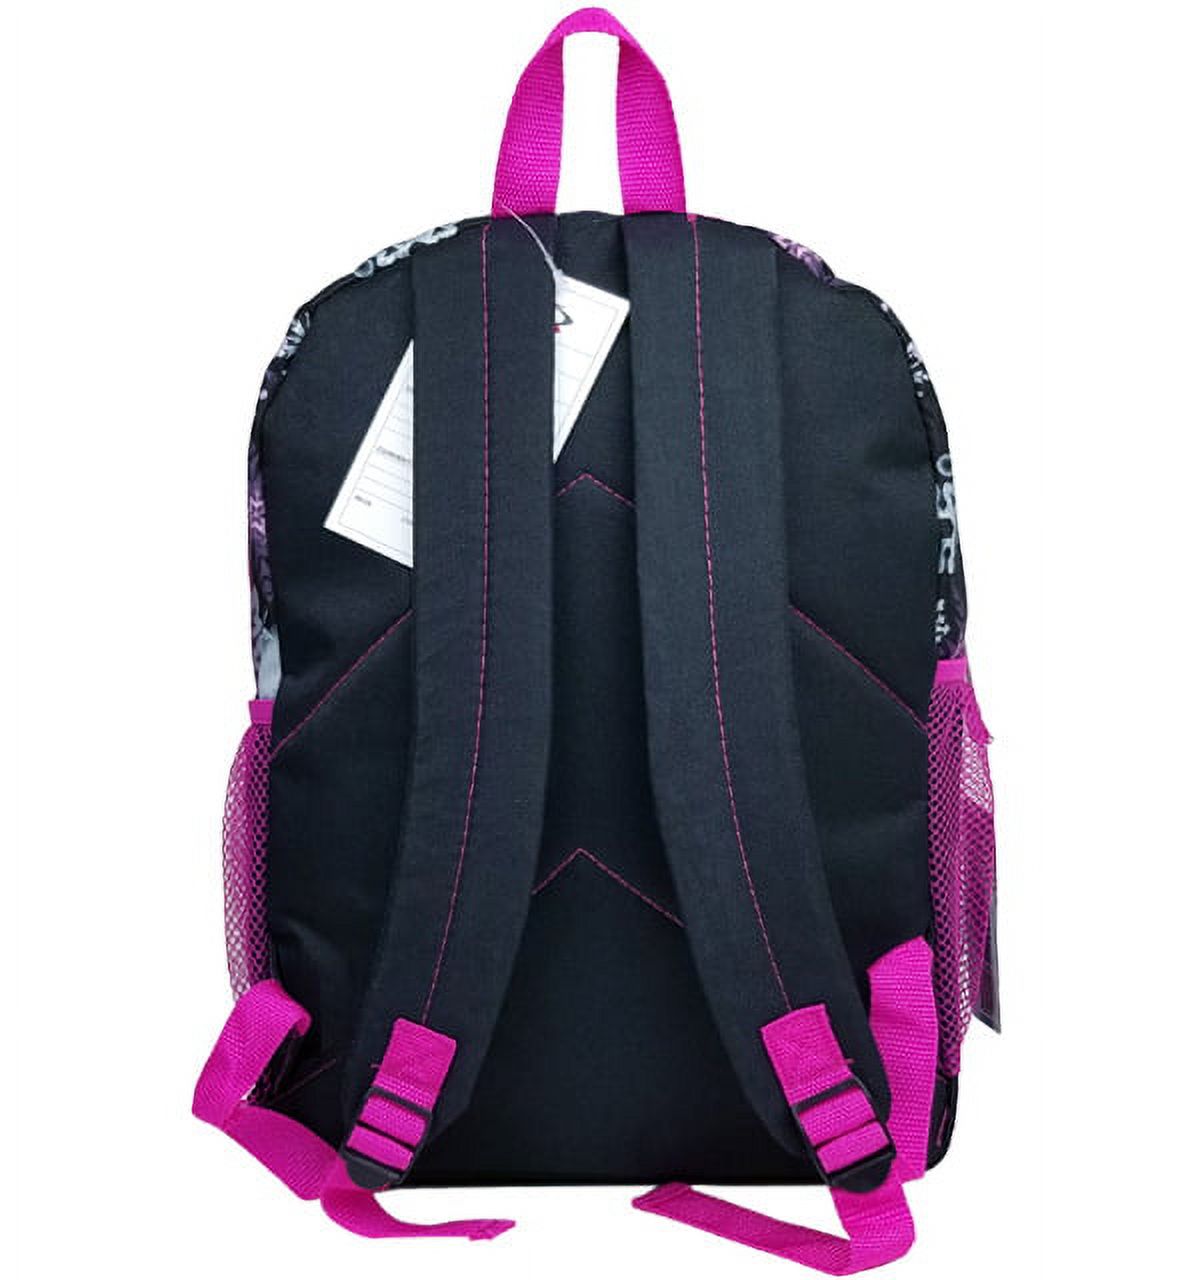 Disney Frozen Sky Magic Black Girls Large Backpack/School Book Bag for Kids - image 2 of 3